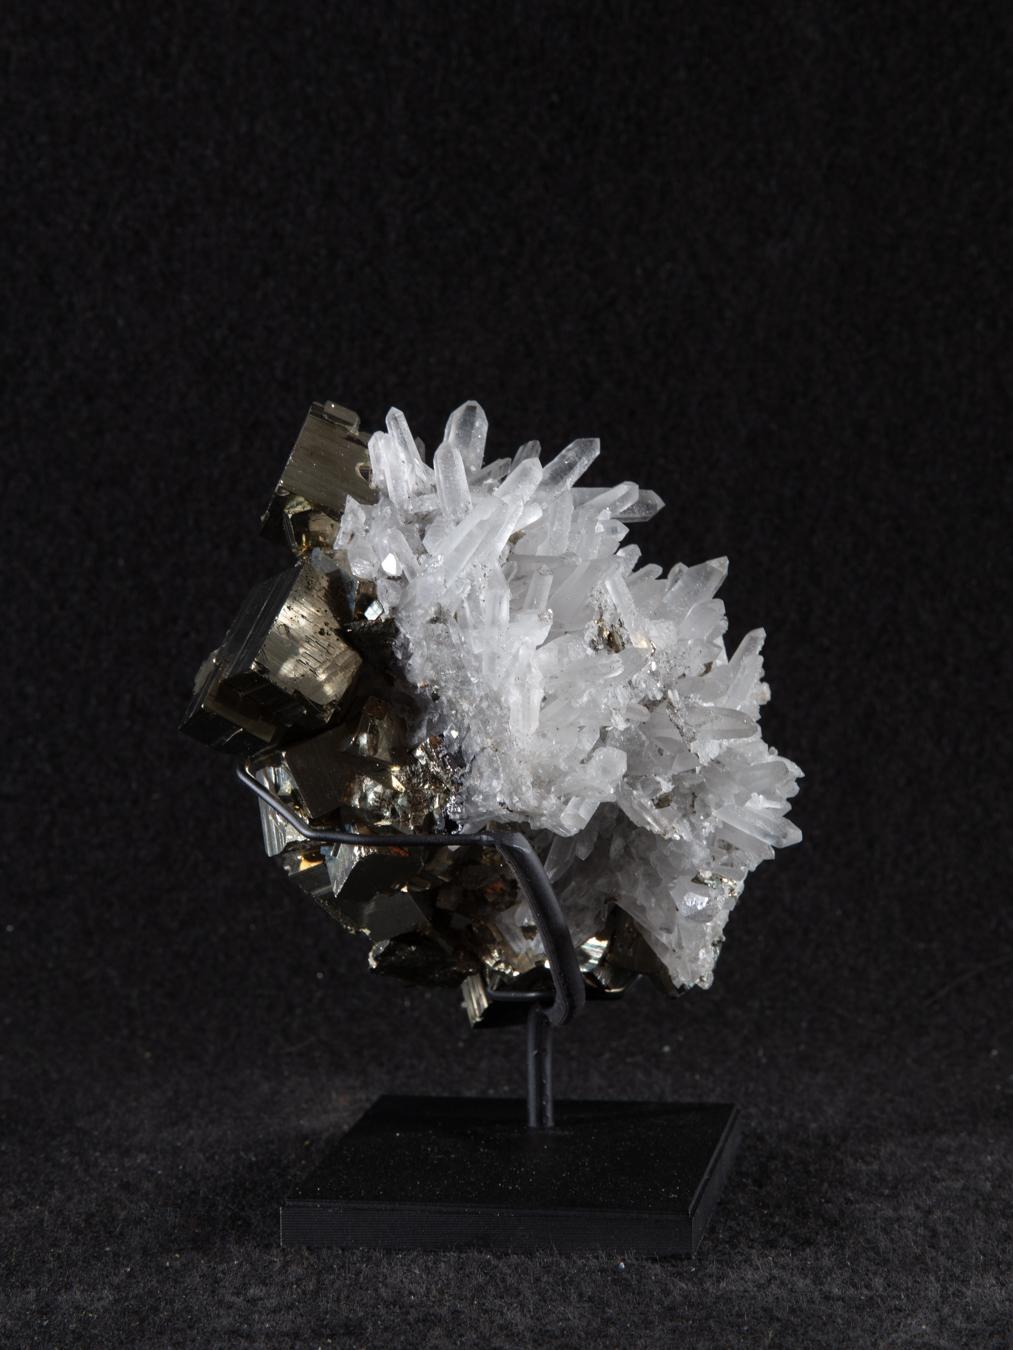 Pyrit (FeS2, Eisen(II)disulfid) ist das am häufigsten vorkommende Sulfidmineral der Welt. Es ist buchstäblich überall zu finden, in Eruptivgestein, metamorphem Gestein und in Sedimentgestein. 
Es bildet in der Regel kubische Kristalle mit sechs